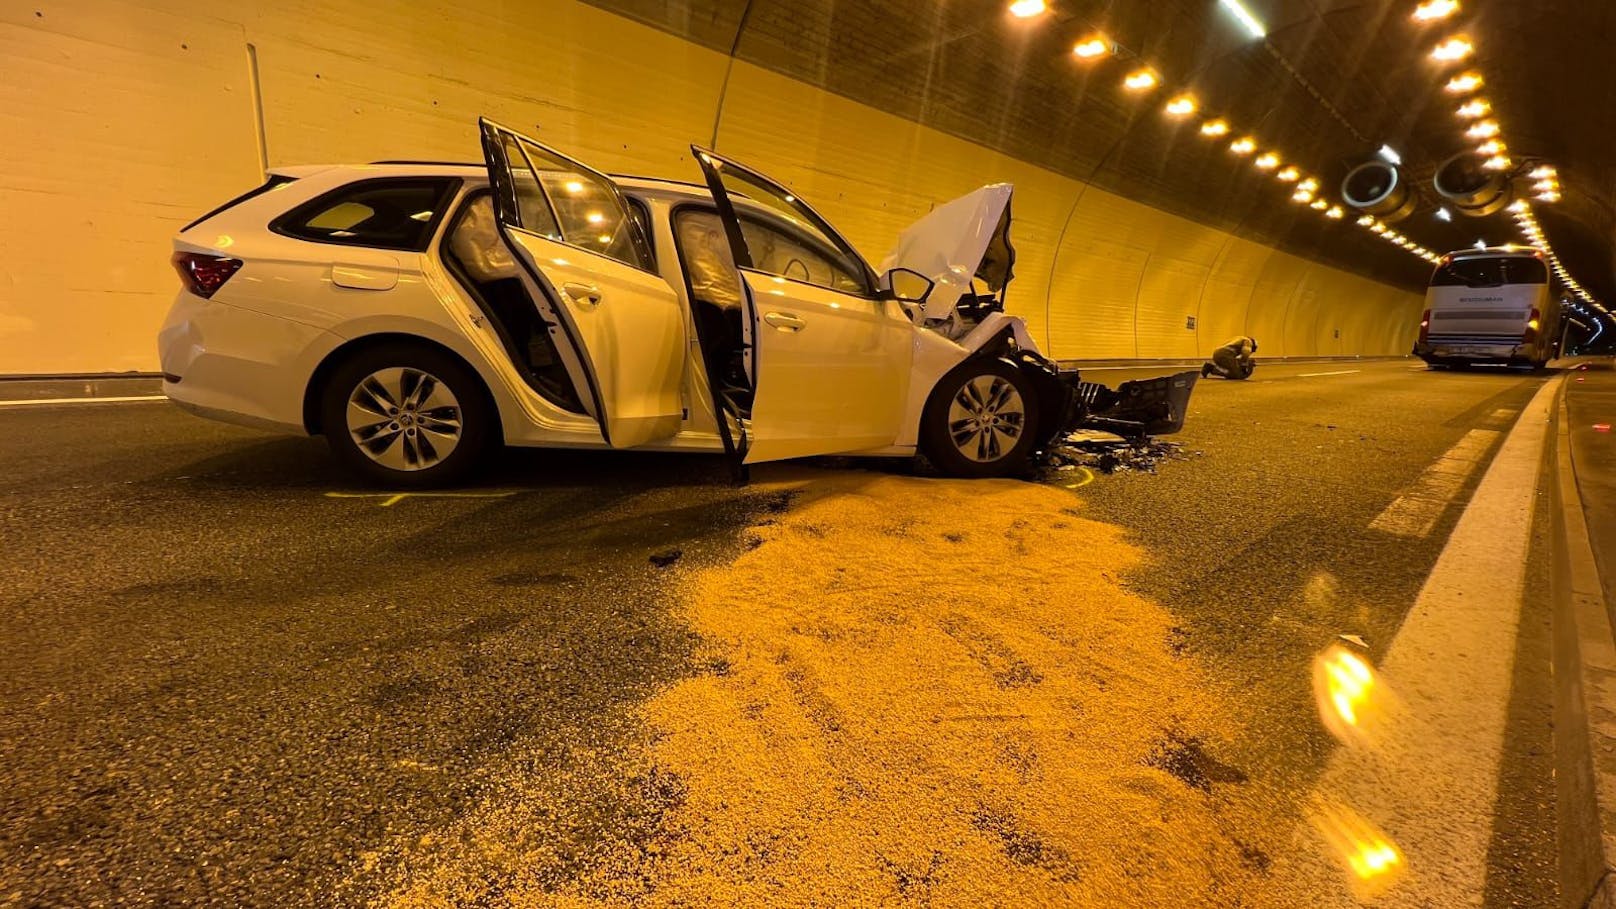 Schwerer Verkehrsunfall am Sonntag in Pians! Ein Skoda-Fahrer donnerte in einem Tunnel in das Heck eines Reisebusses. Dabei wurden mehrere Personen verletzt.